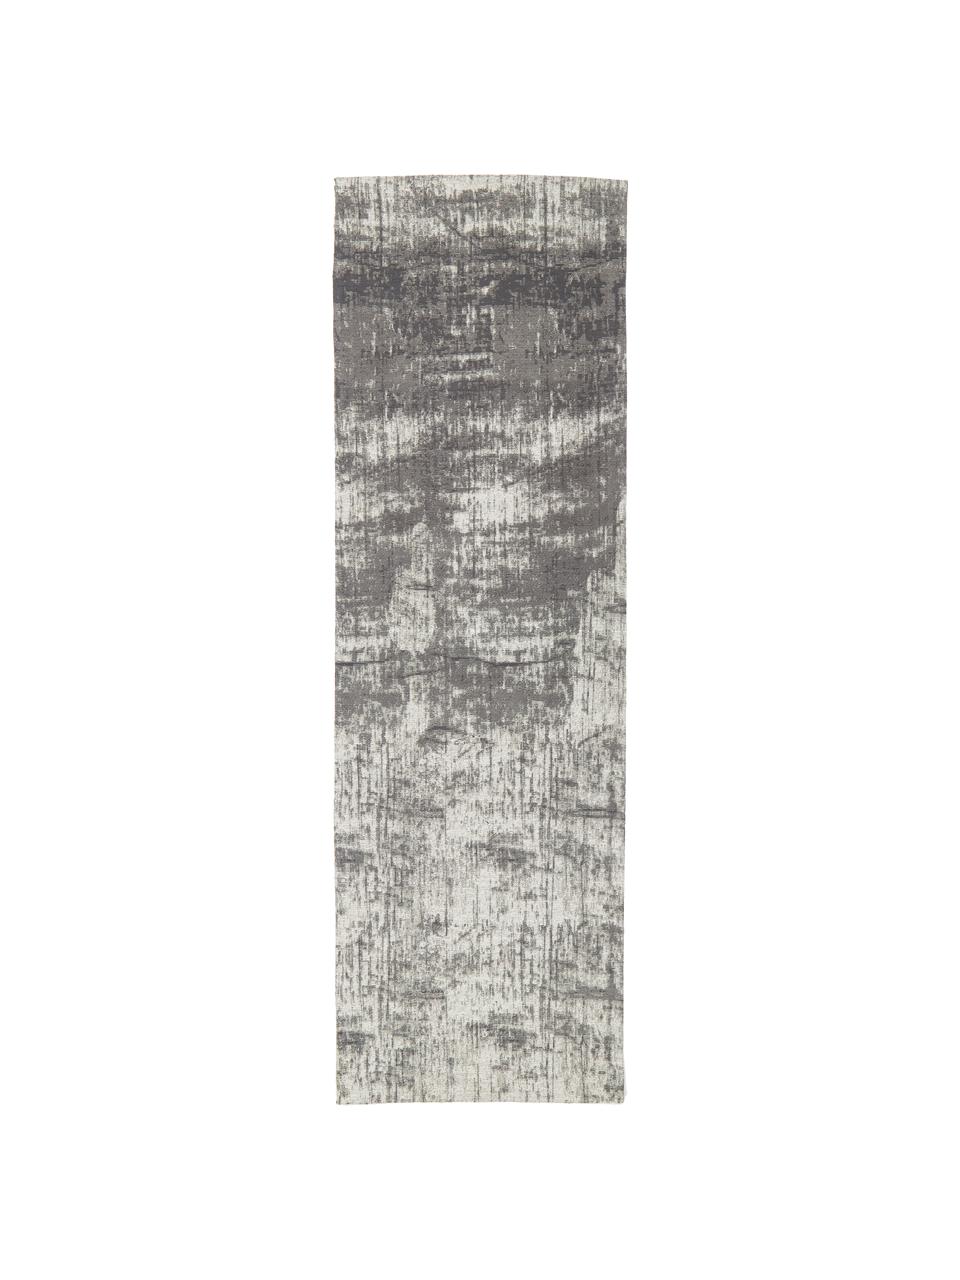 Ručne tkaný bavlnený behúň vo vintage štýle Luise, Sivé a biele tóny, Š 80 x D 250 cm